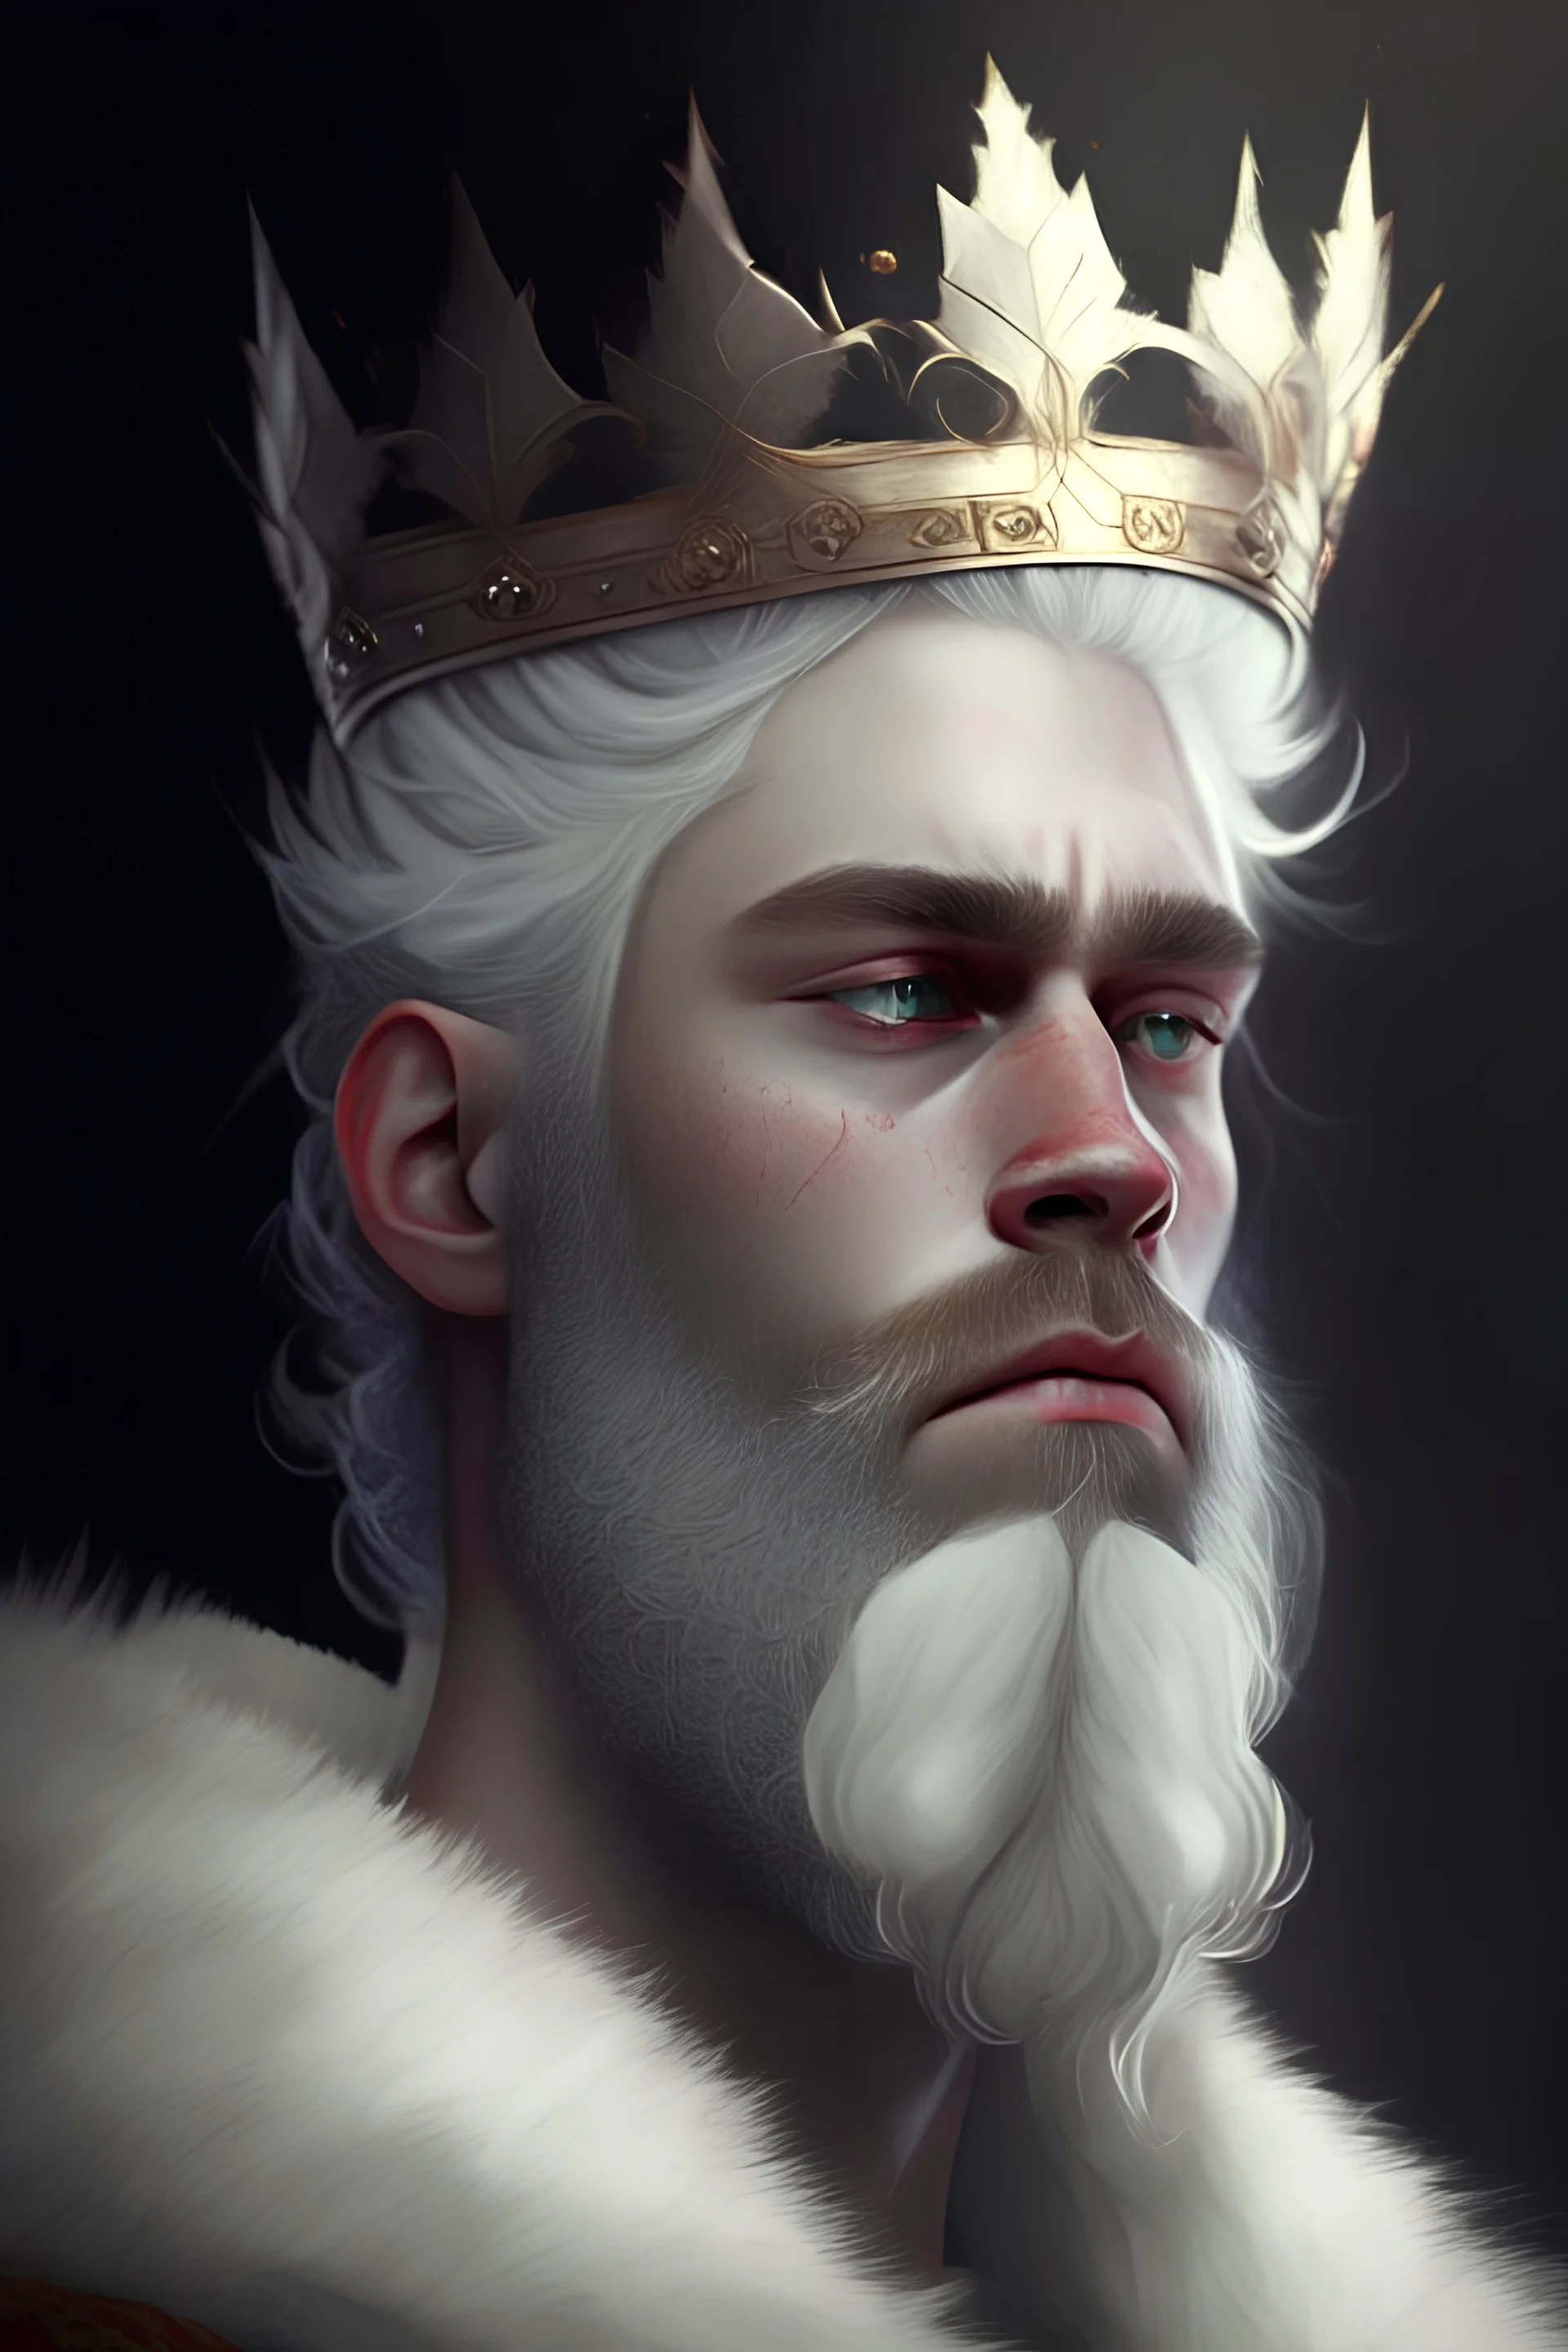 پادشاه جوان با تاج و مو و ریش سفید